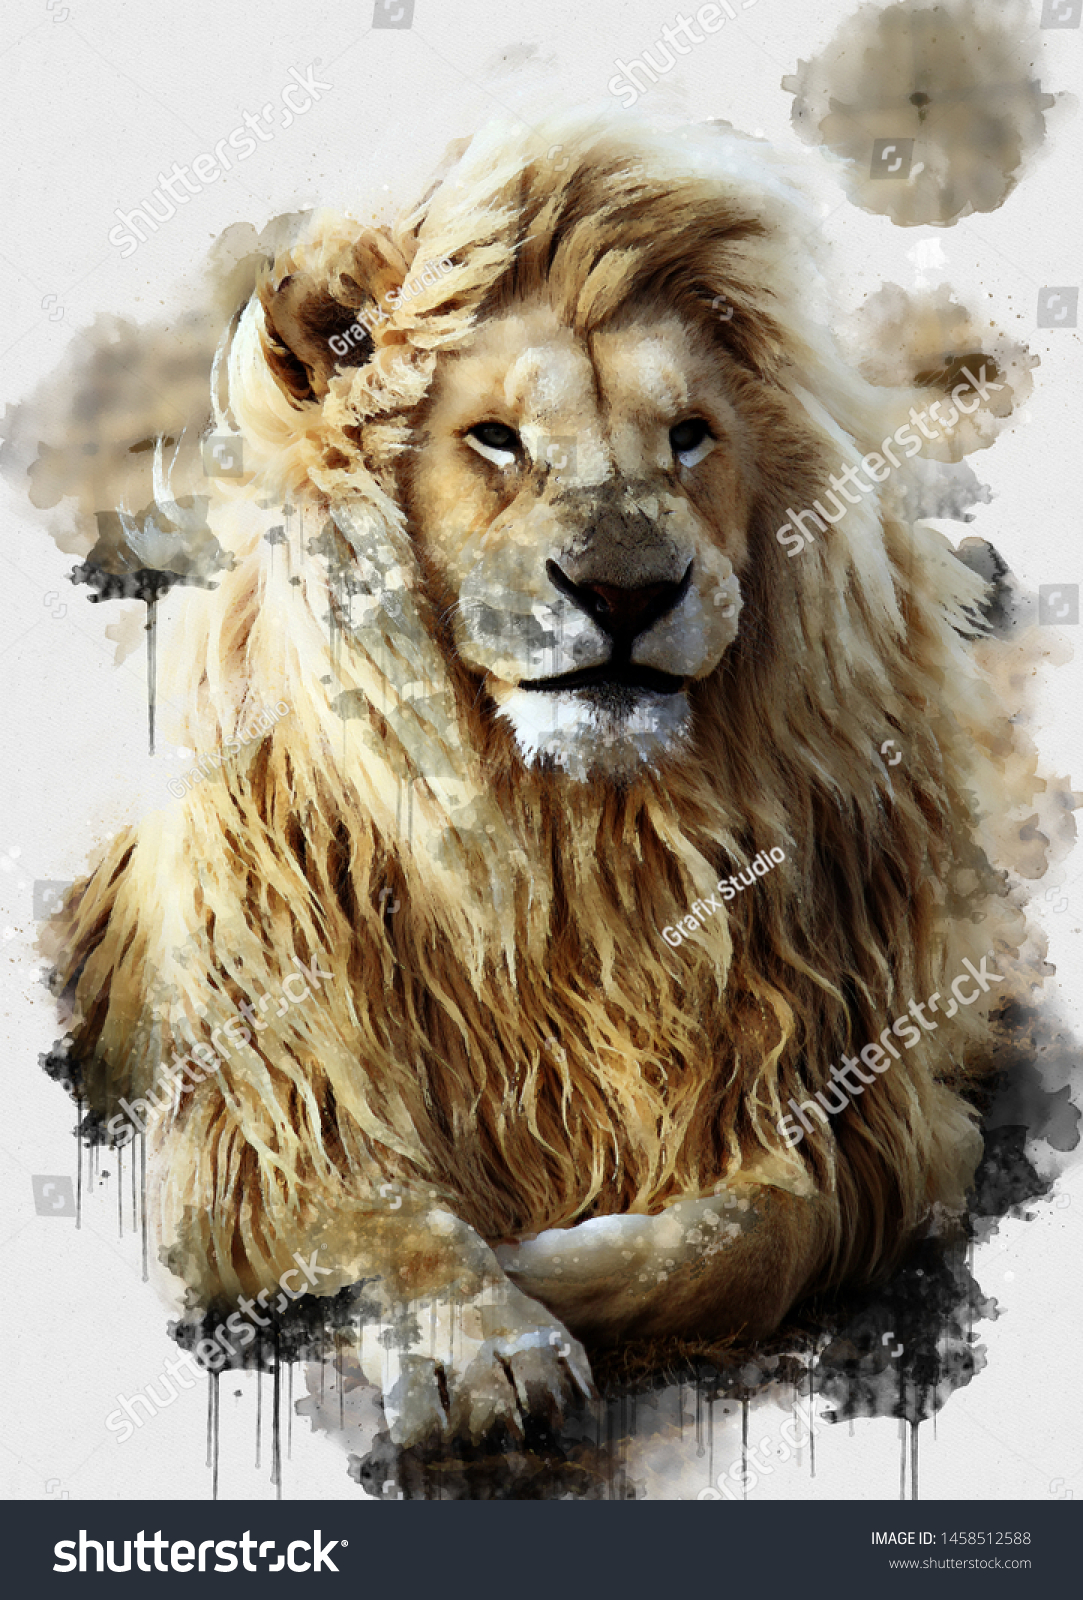 獅子水彩デジタル画 デジタルアート 暖かい日にくつろぐライオンの王様の美しい画像を描いた デジタル水彩画 茶色のライオンの絵 抽象的な動物の壁紙 のイラスト素材